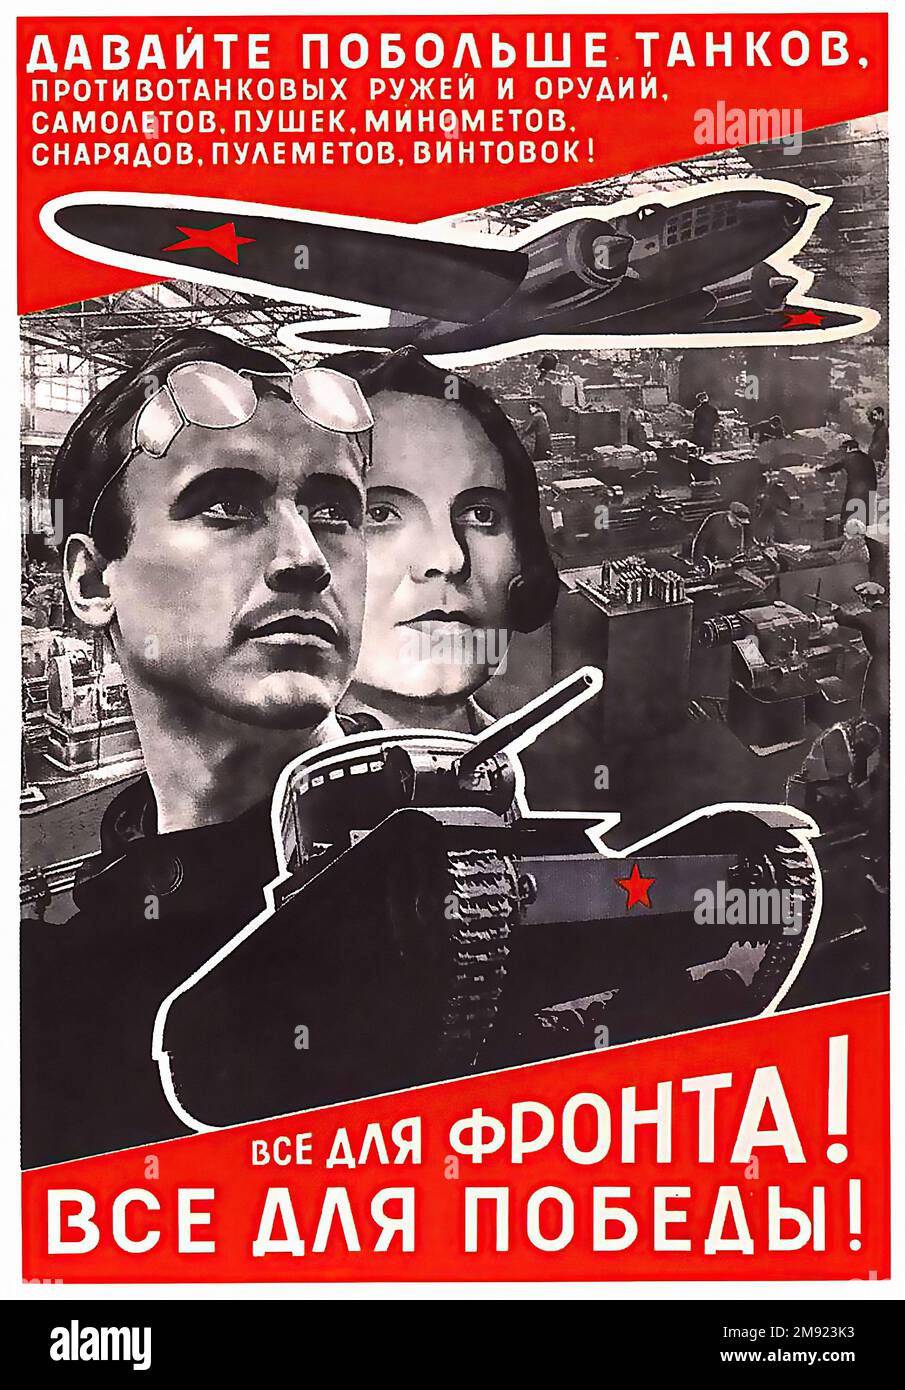 1942 - aerei e carri armati! (Tradotto dal russo) - poster della propaganda sovietica dell'URSS d'epoca Foto Stock